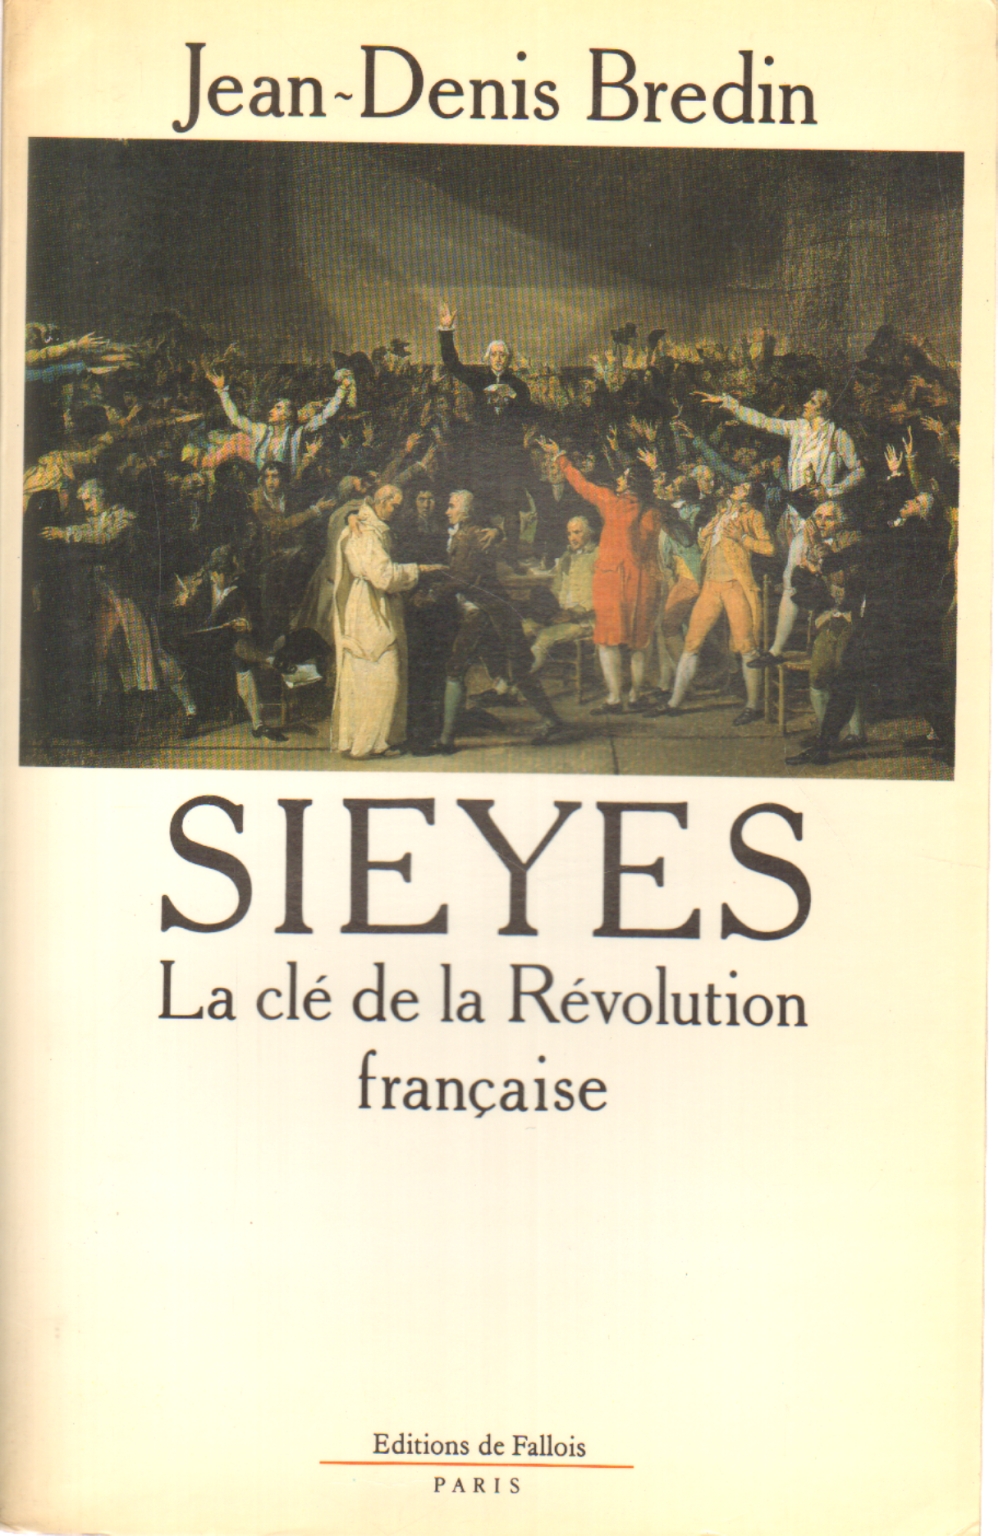 Sieyès, Jean-Denis Bredin